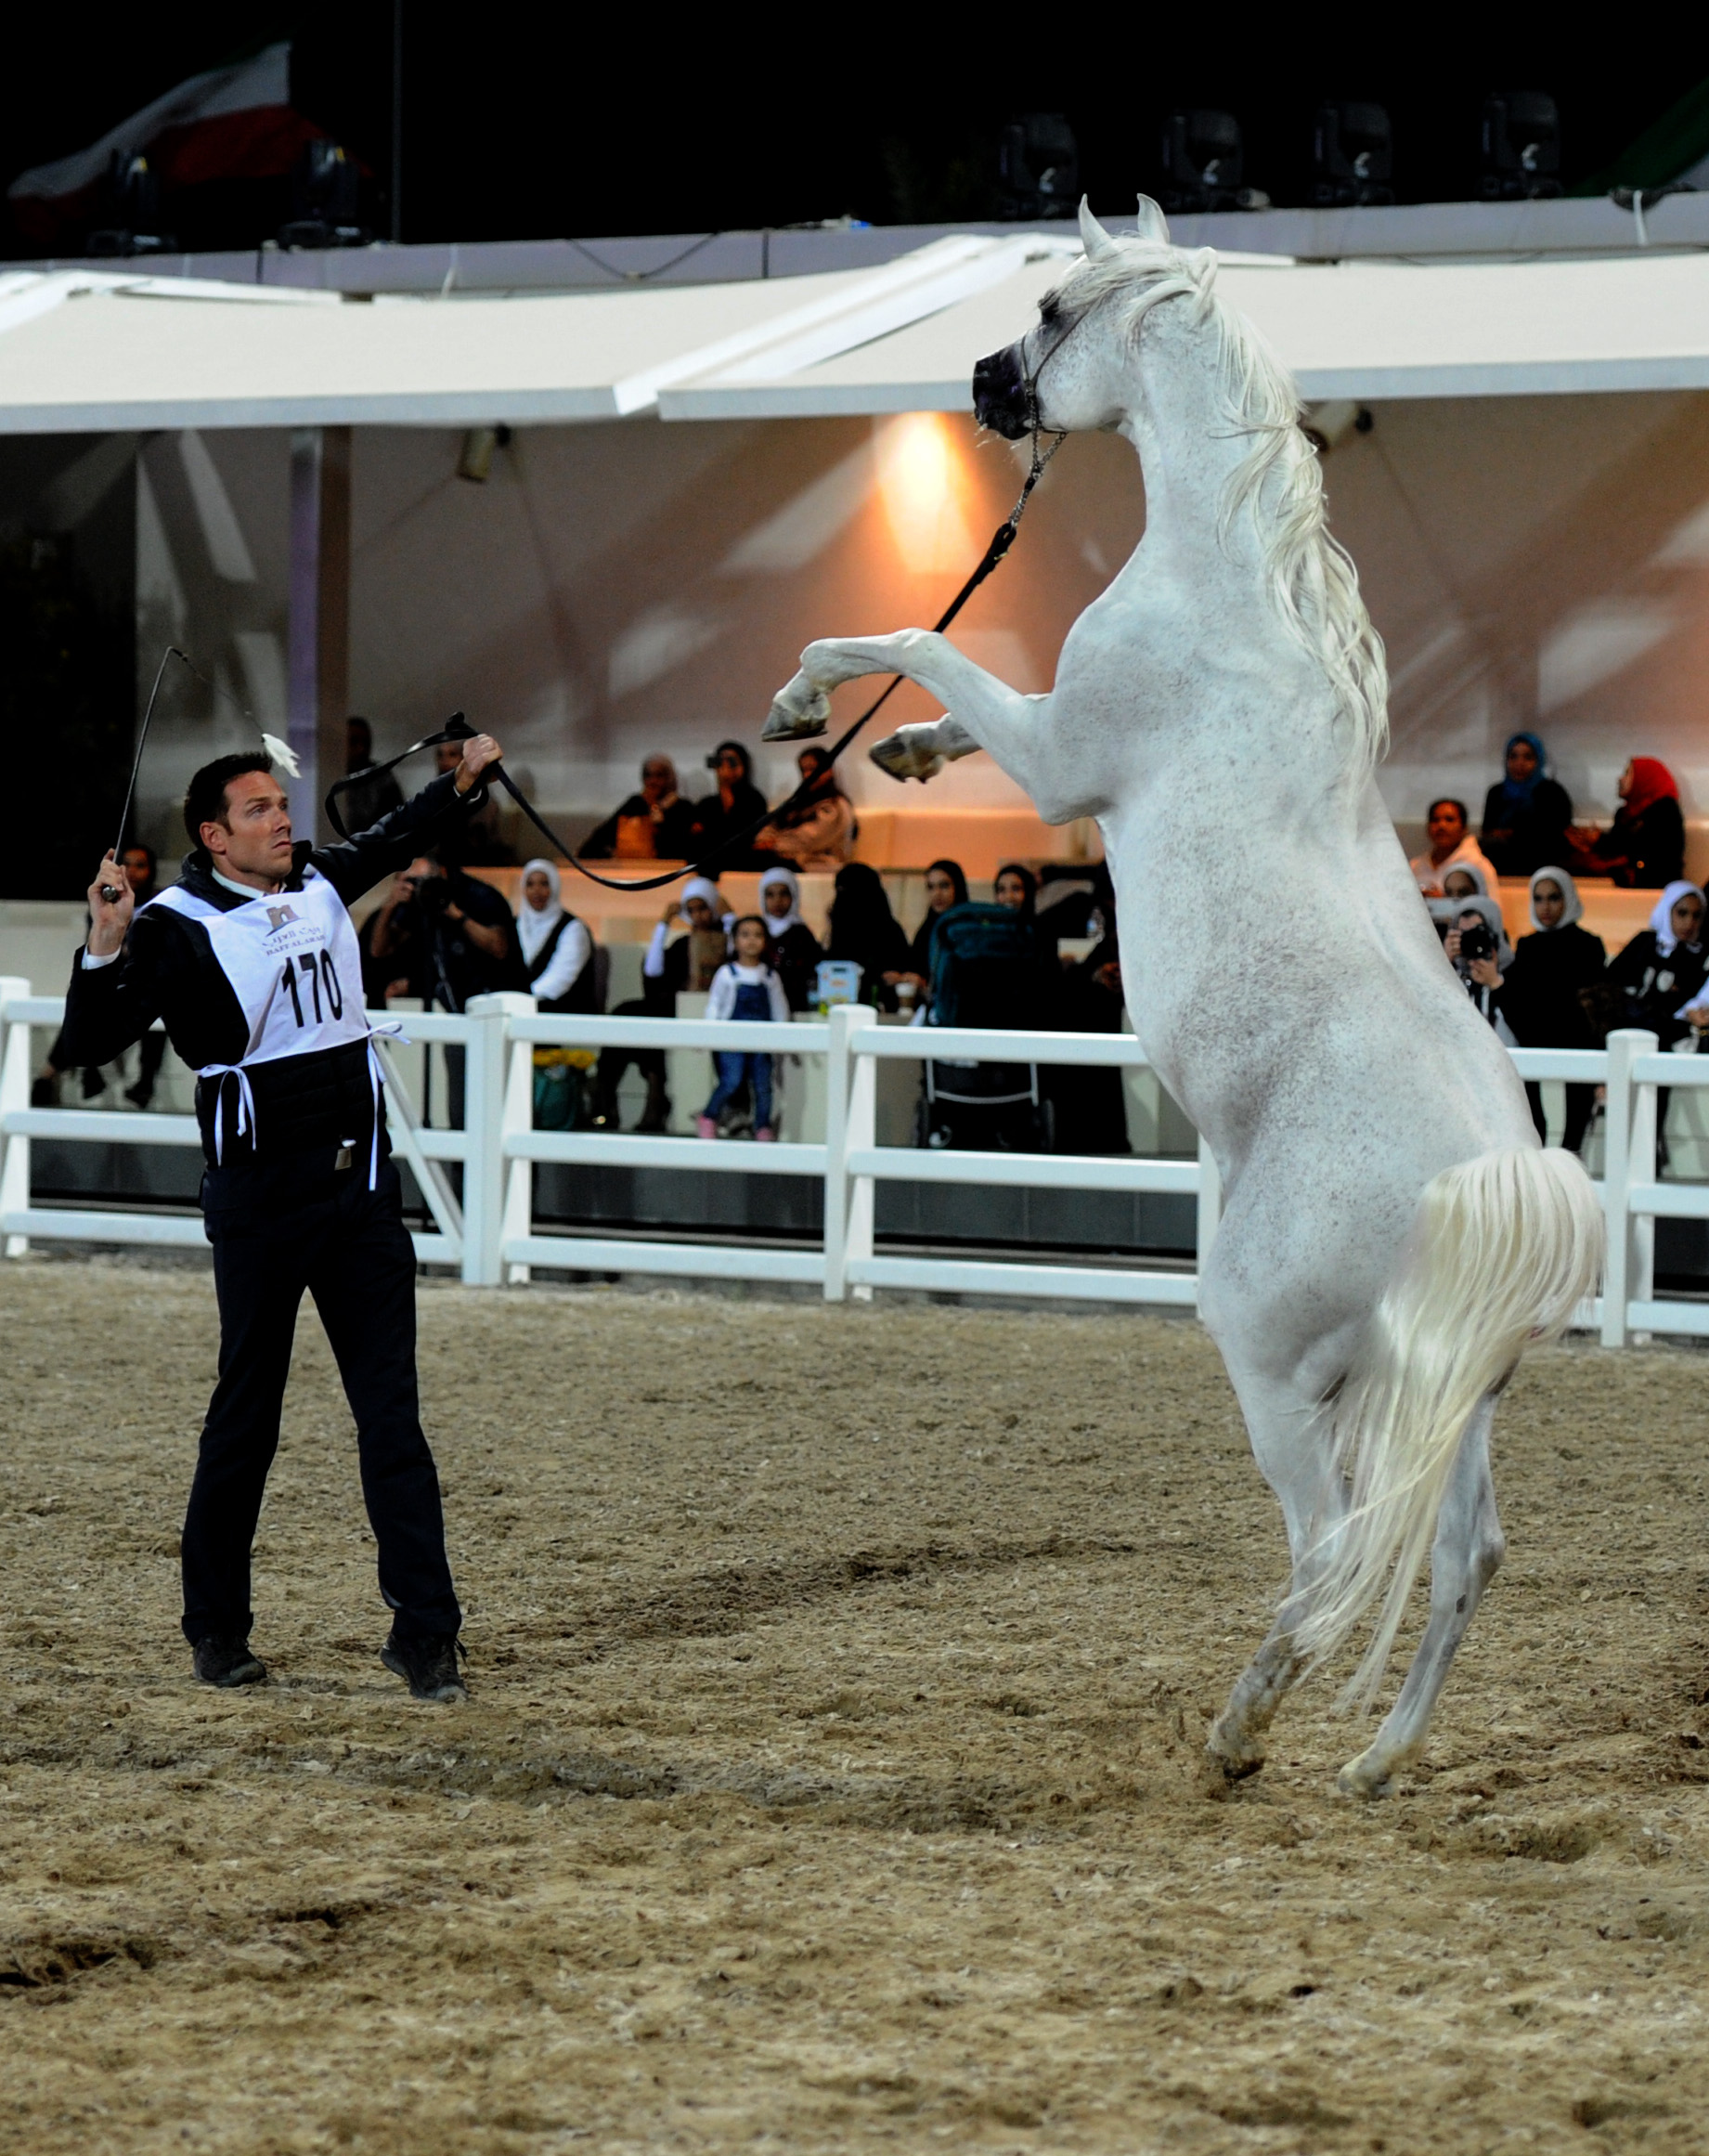 جانب من استعراض الخيول ضمن منافسات مهرجان الكويت الدولي للجواد العربي